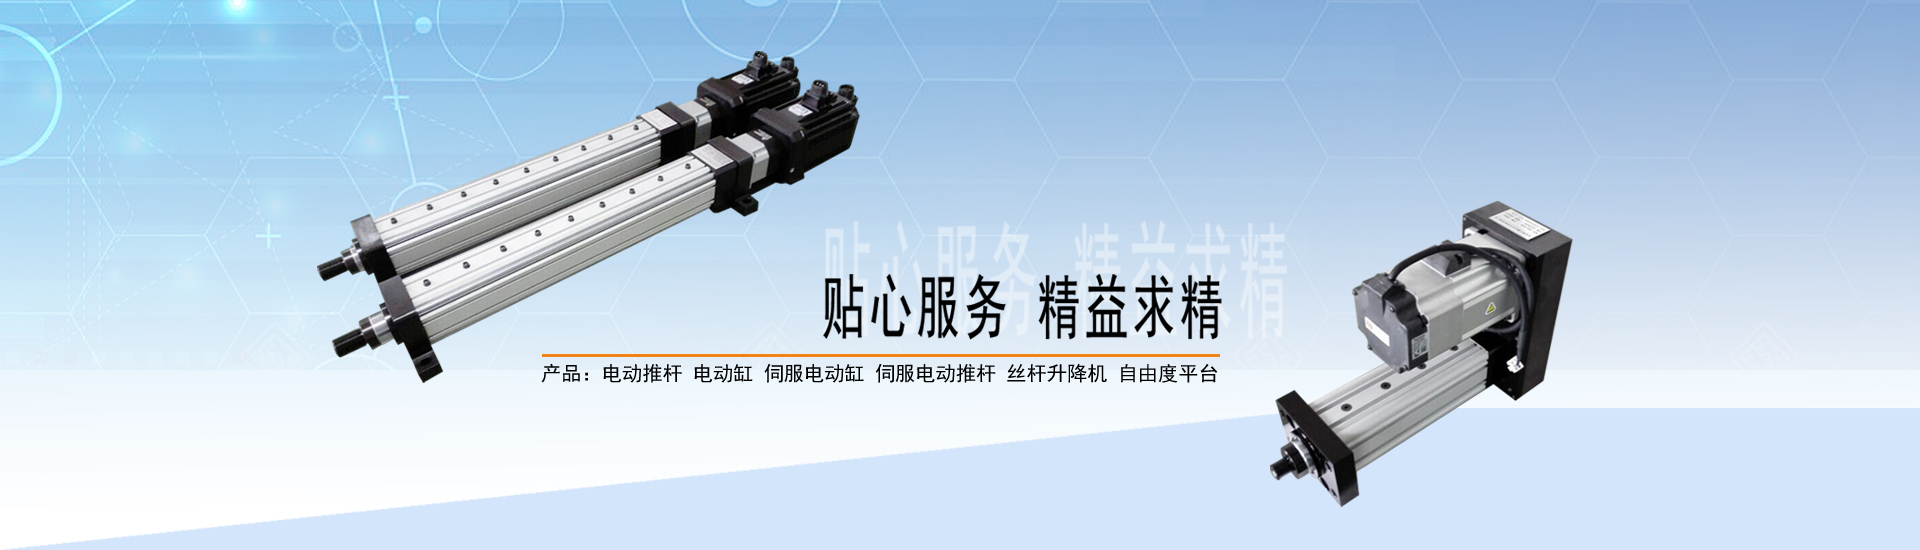 关于当前产品399003乐博首页·(中国)官方网站的成功案例等相关图片